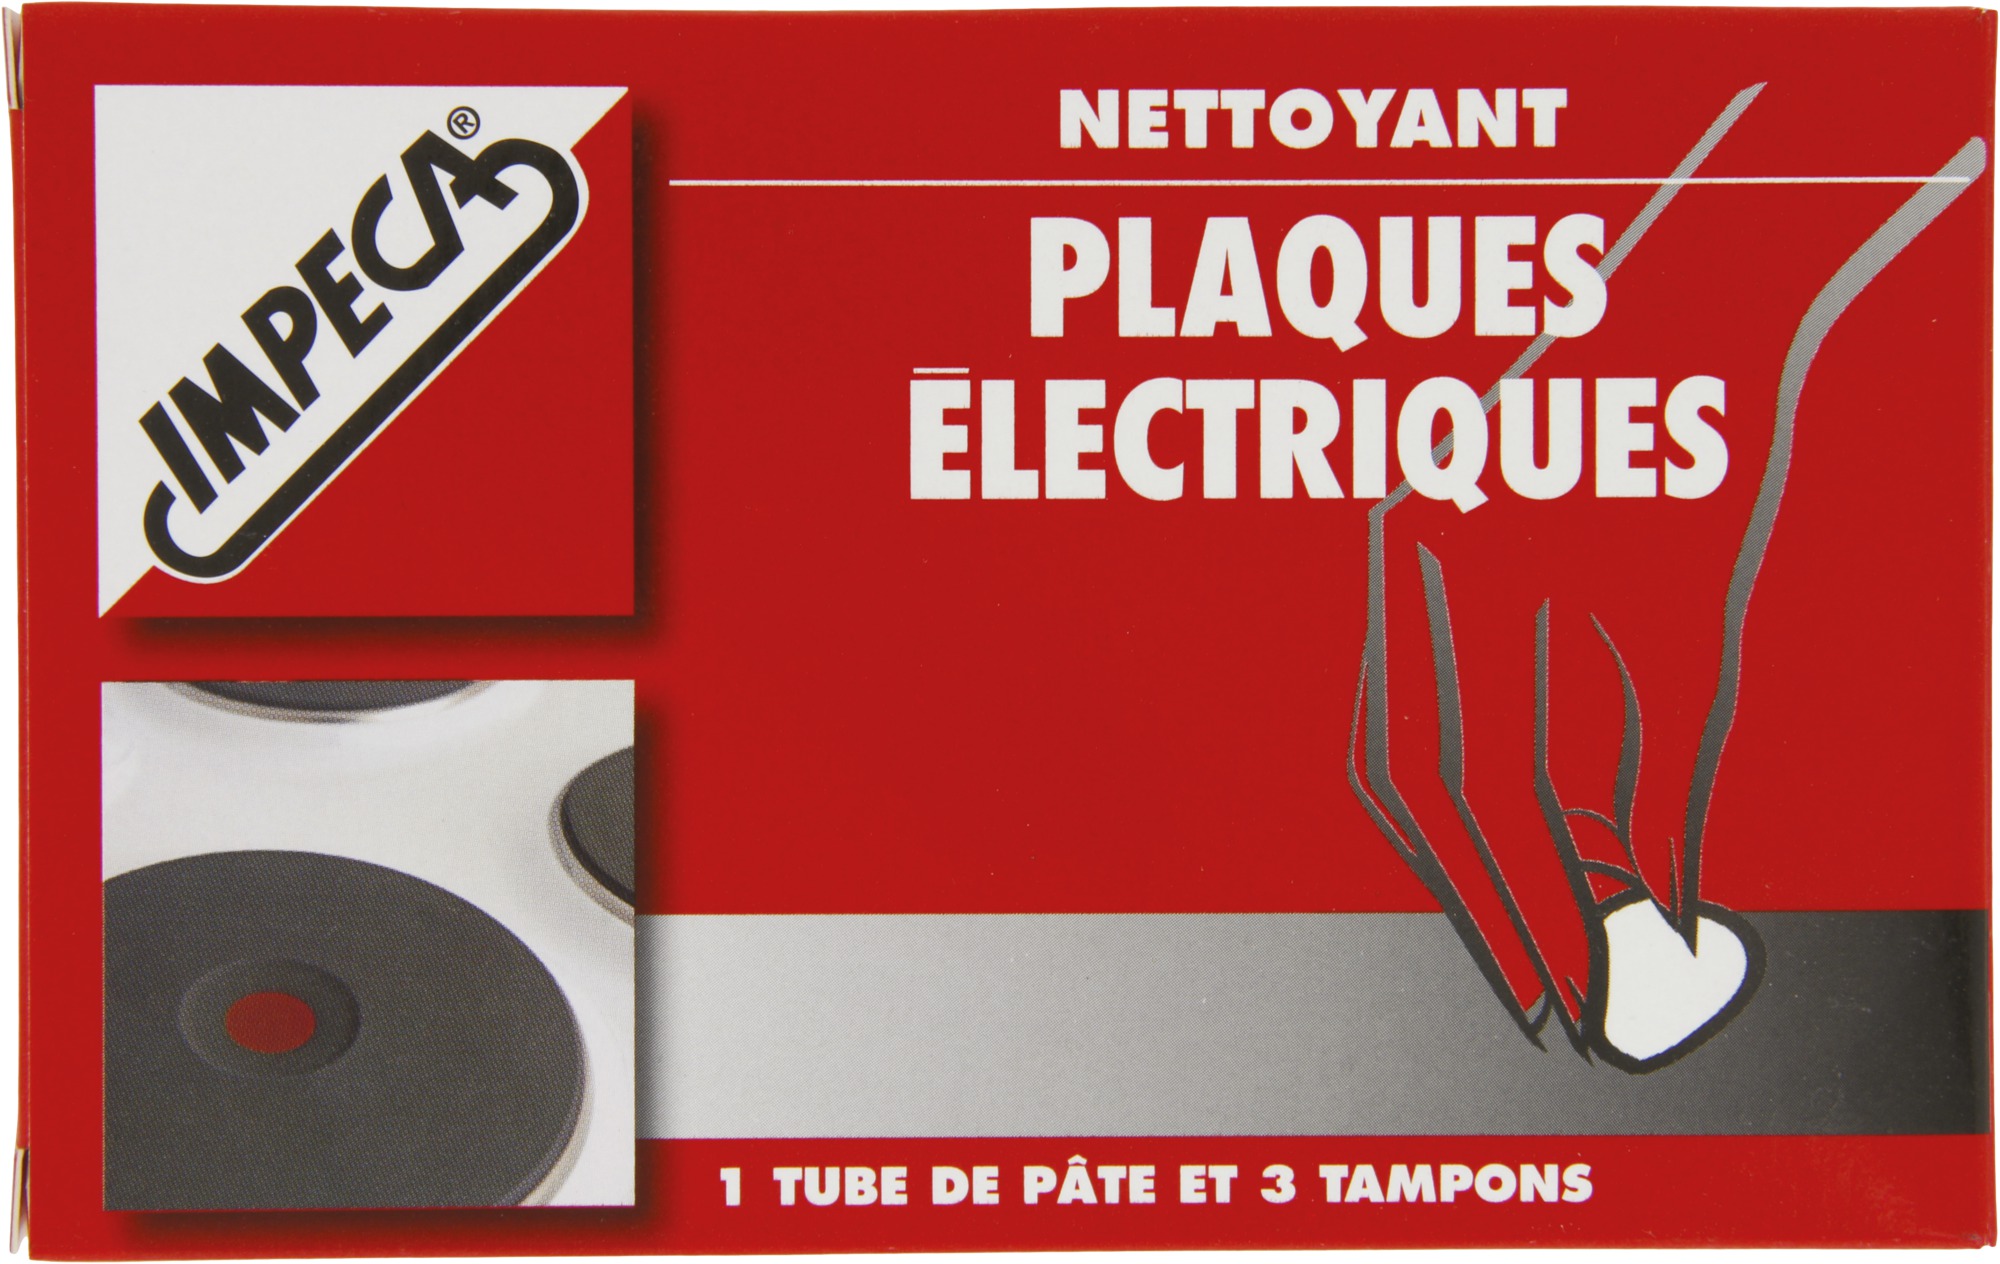 Nettoyant plaques électriques Impeca - Tube 50 ml